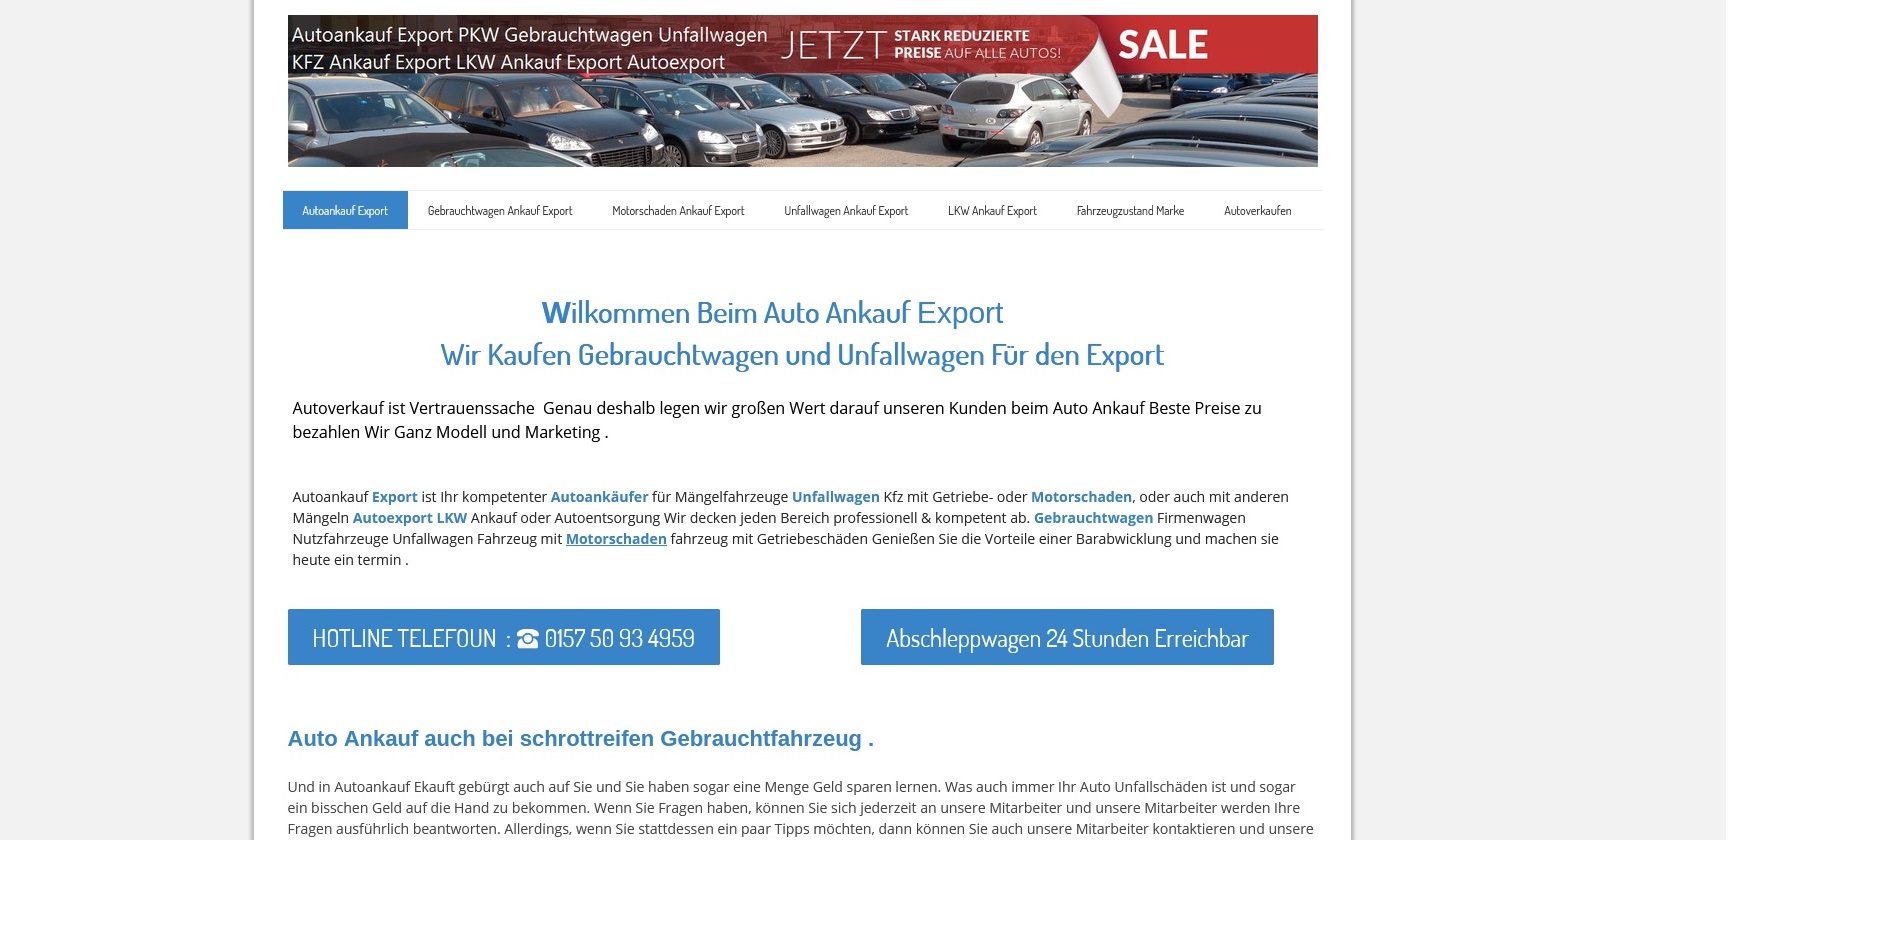 Autoankauf Butzbach | Wir Kaufen Gebrauchtwagen und Unfallwagen